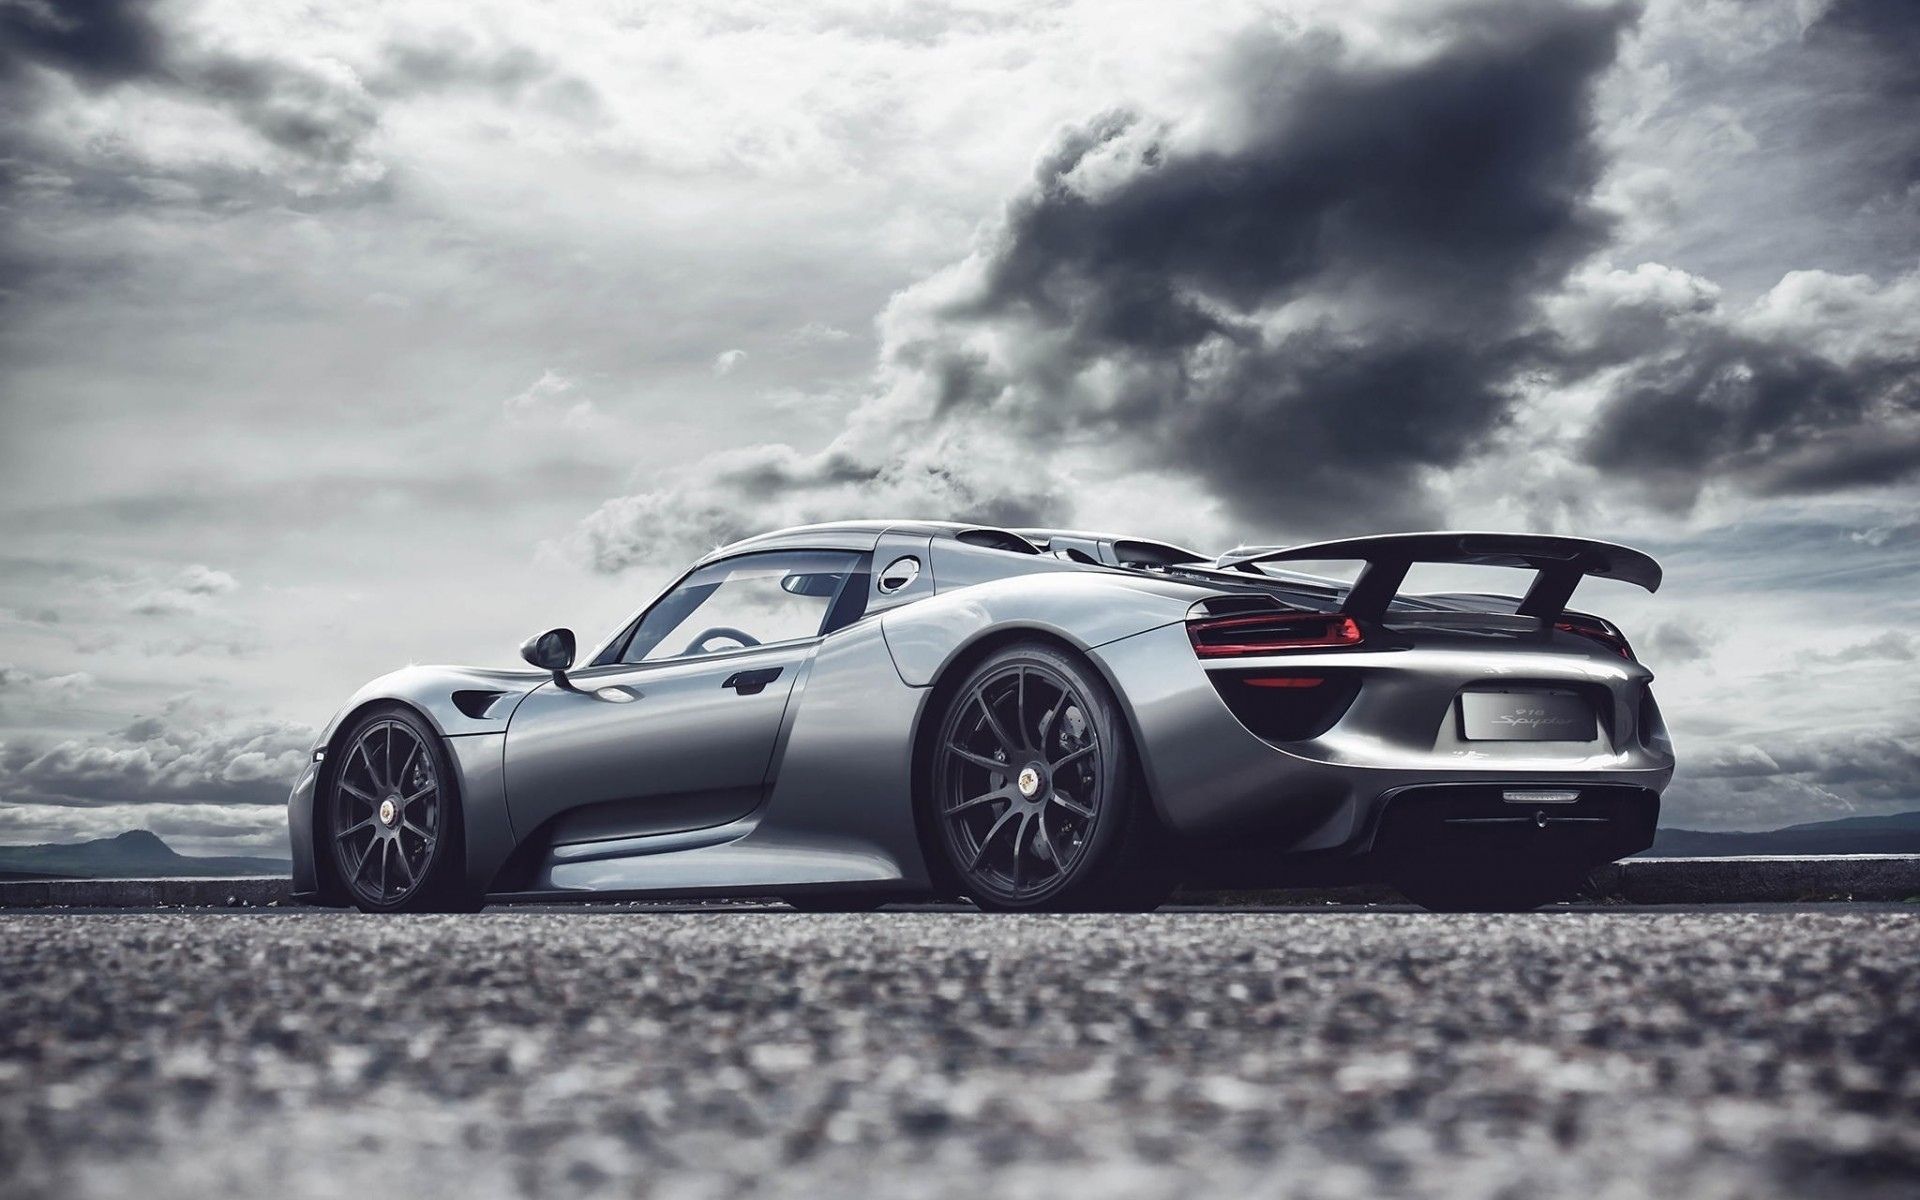 Porsche Spyder Wallpaper Image Group